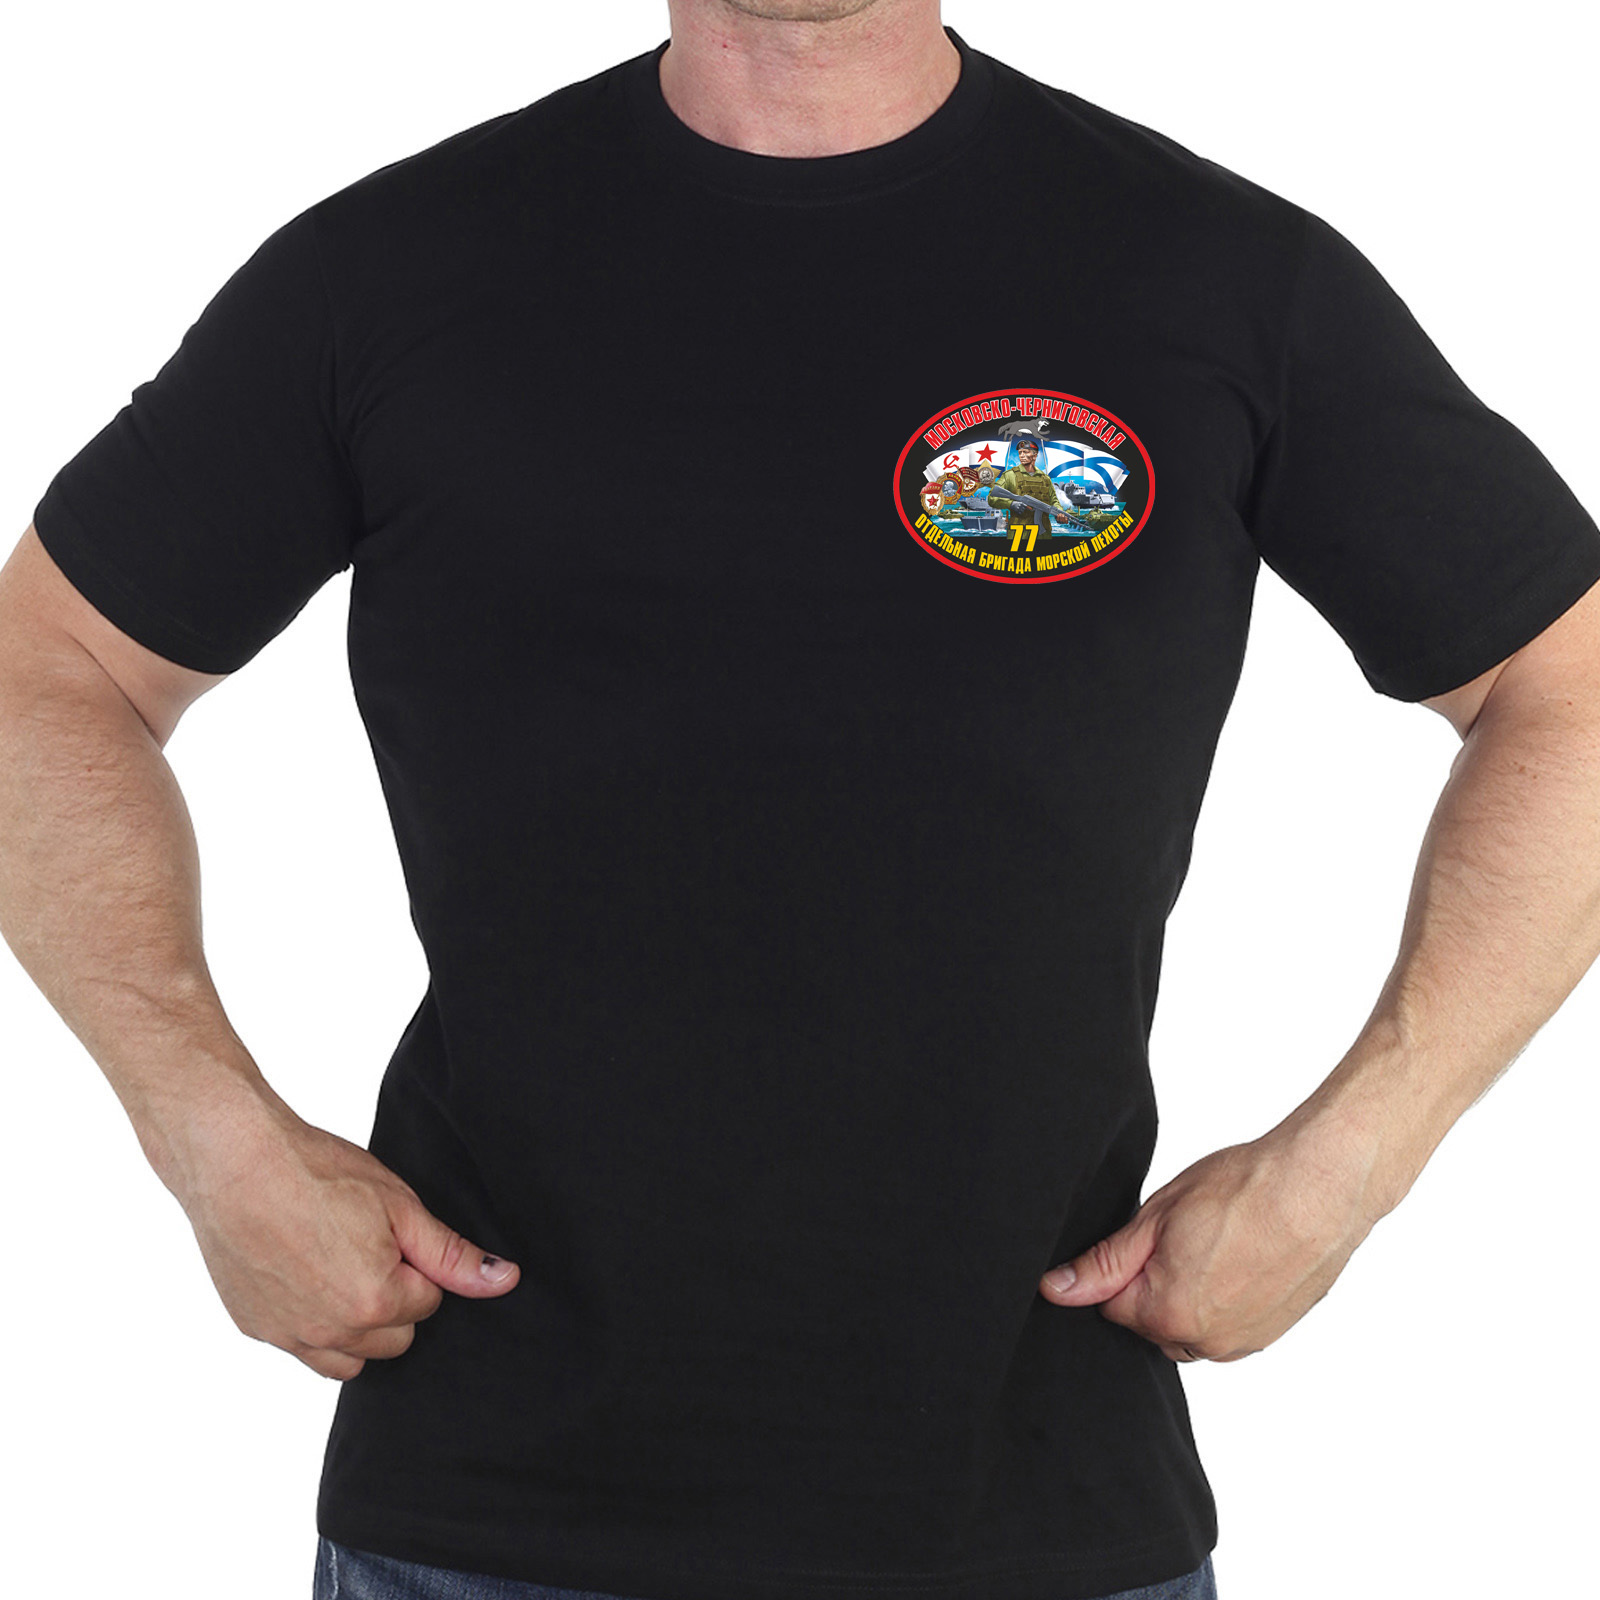 Купить оригинальную хлопковую футболку с термонаклейкой 77 Отдельная бригада Морской Пехоты онлайн